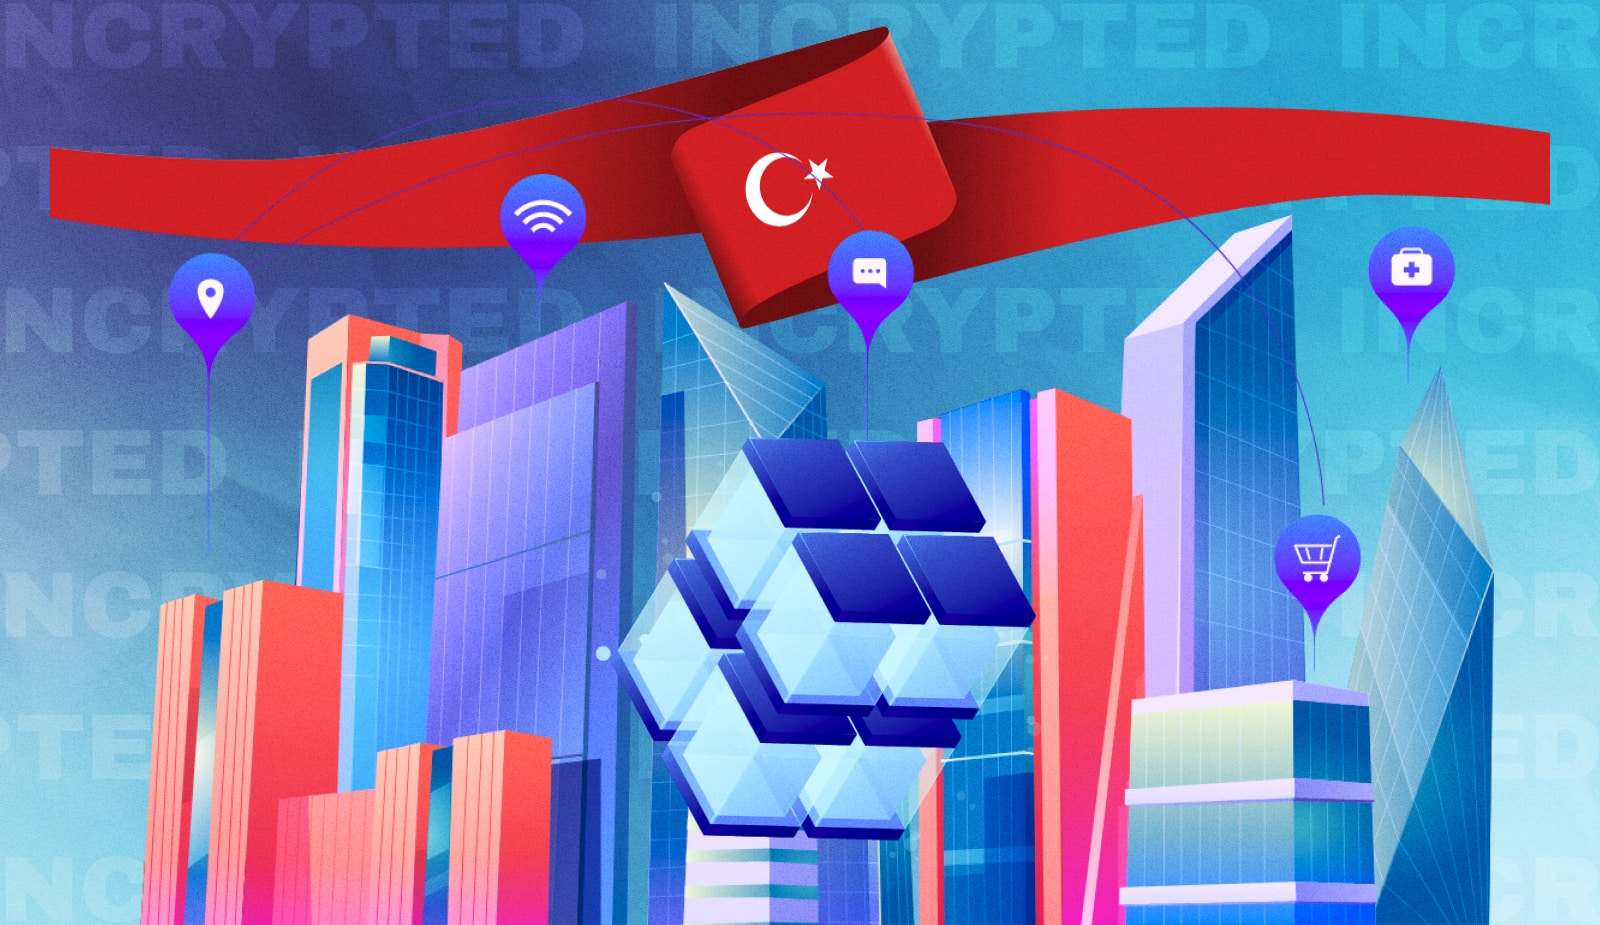 Турция может стать новым региональным центром блокчейн-инфраструктуры. Заглавный коллаж новости.